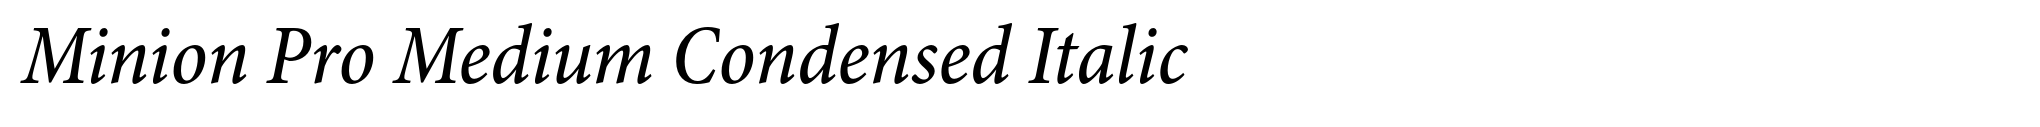 Minion Pro Medium Condensed Italic image